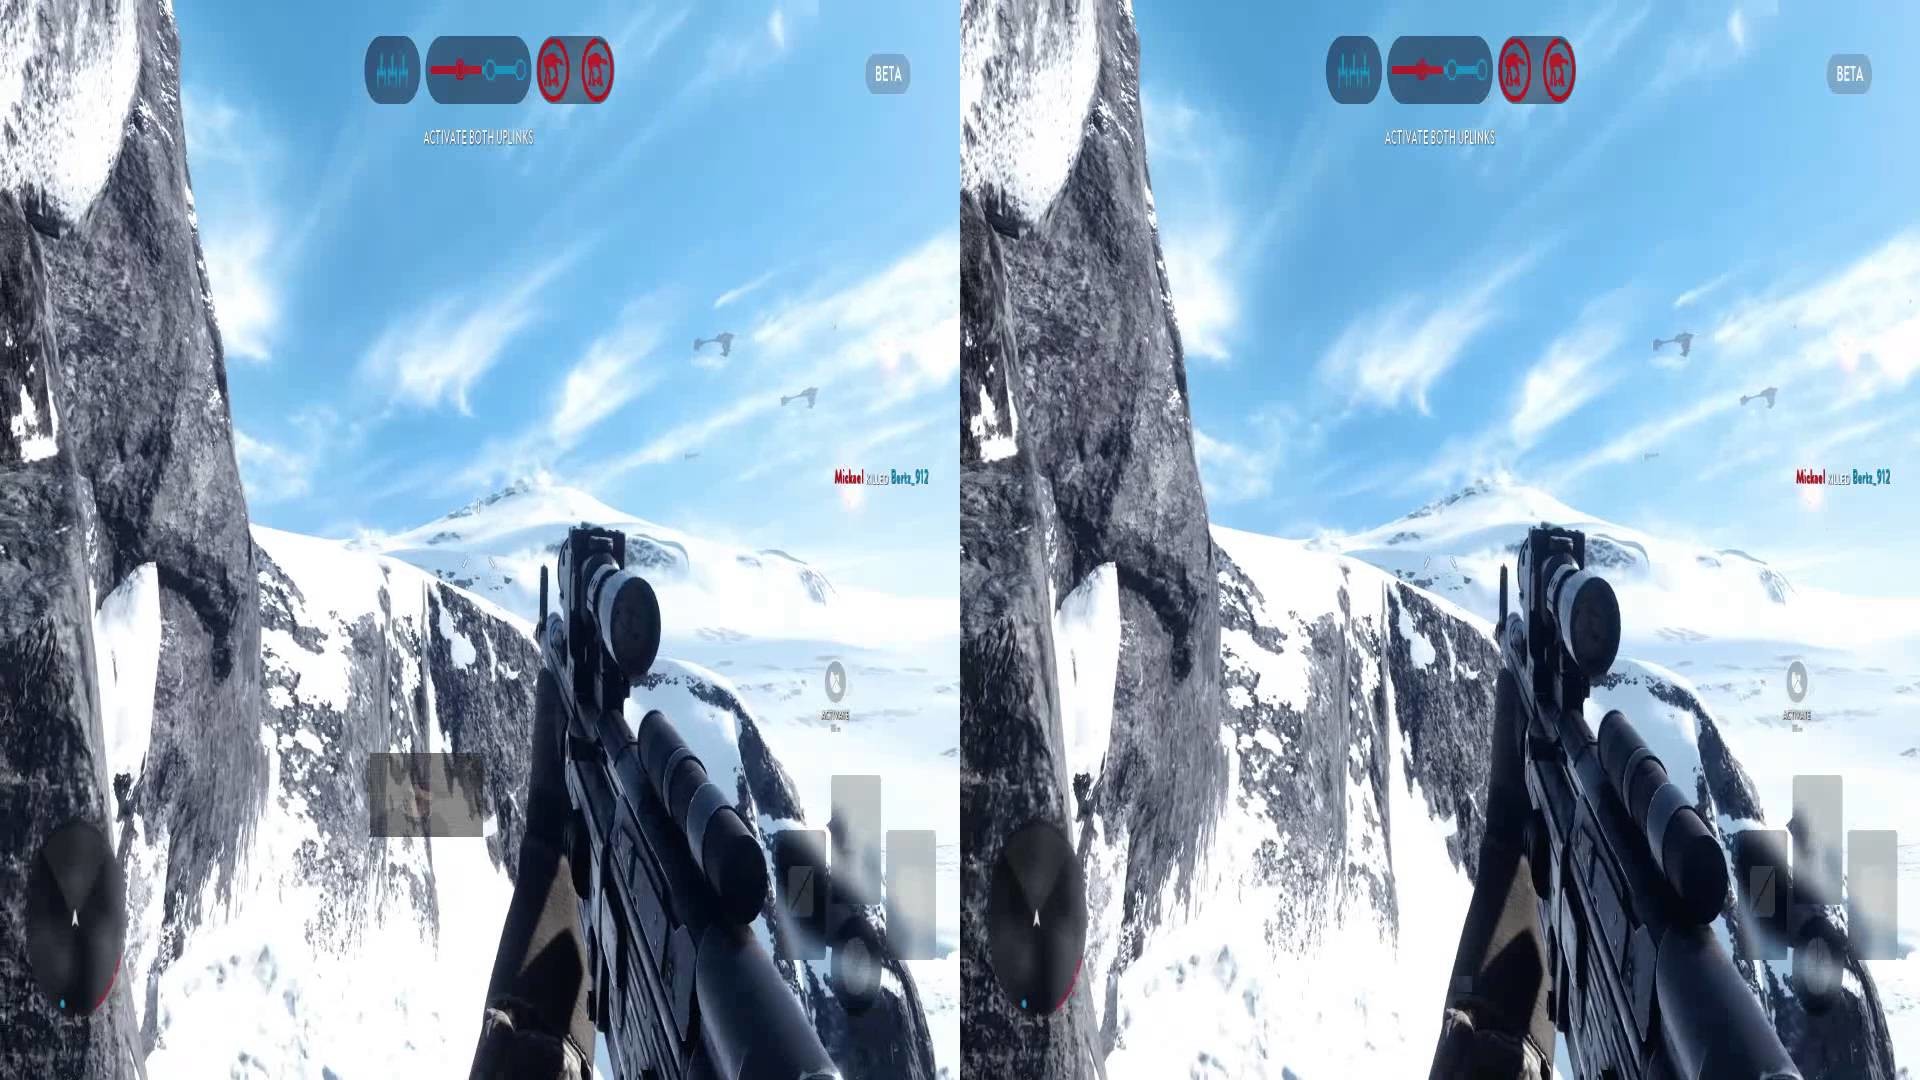 Star Wars Battlefront Beta Oculus Rift 1080p SBS TriDef 3D Zeiss Head  Tracking – YouTube